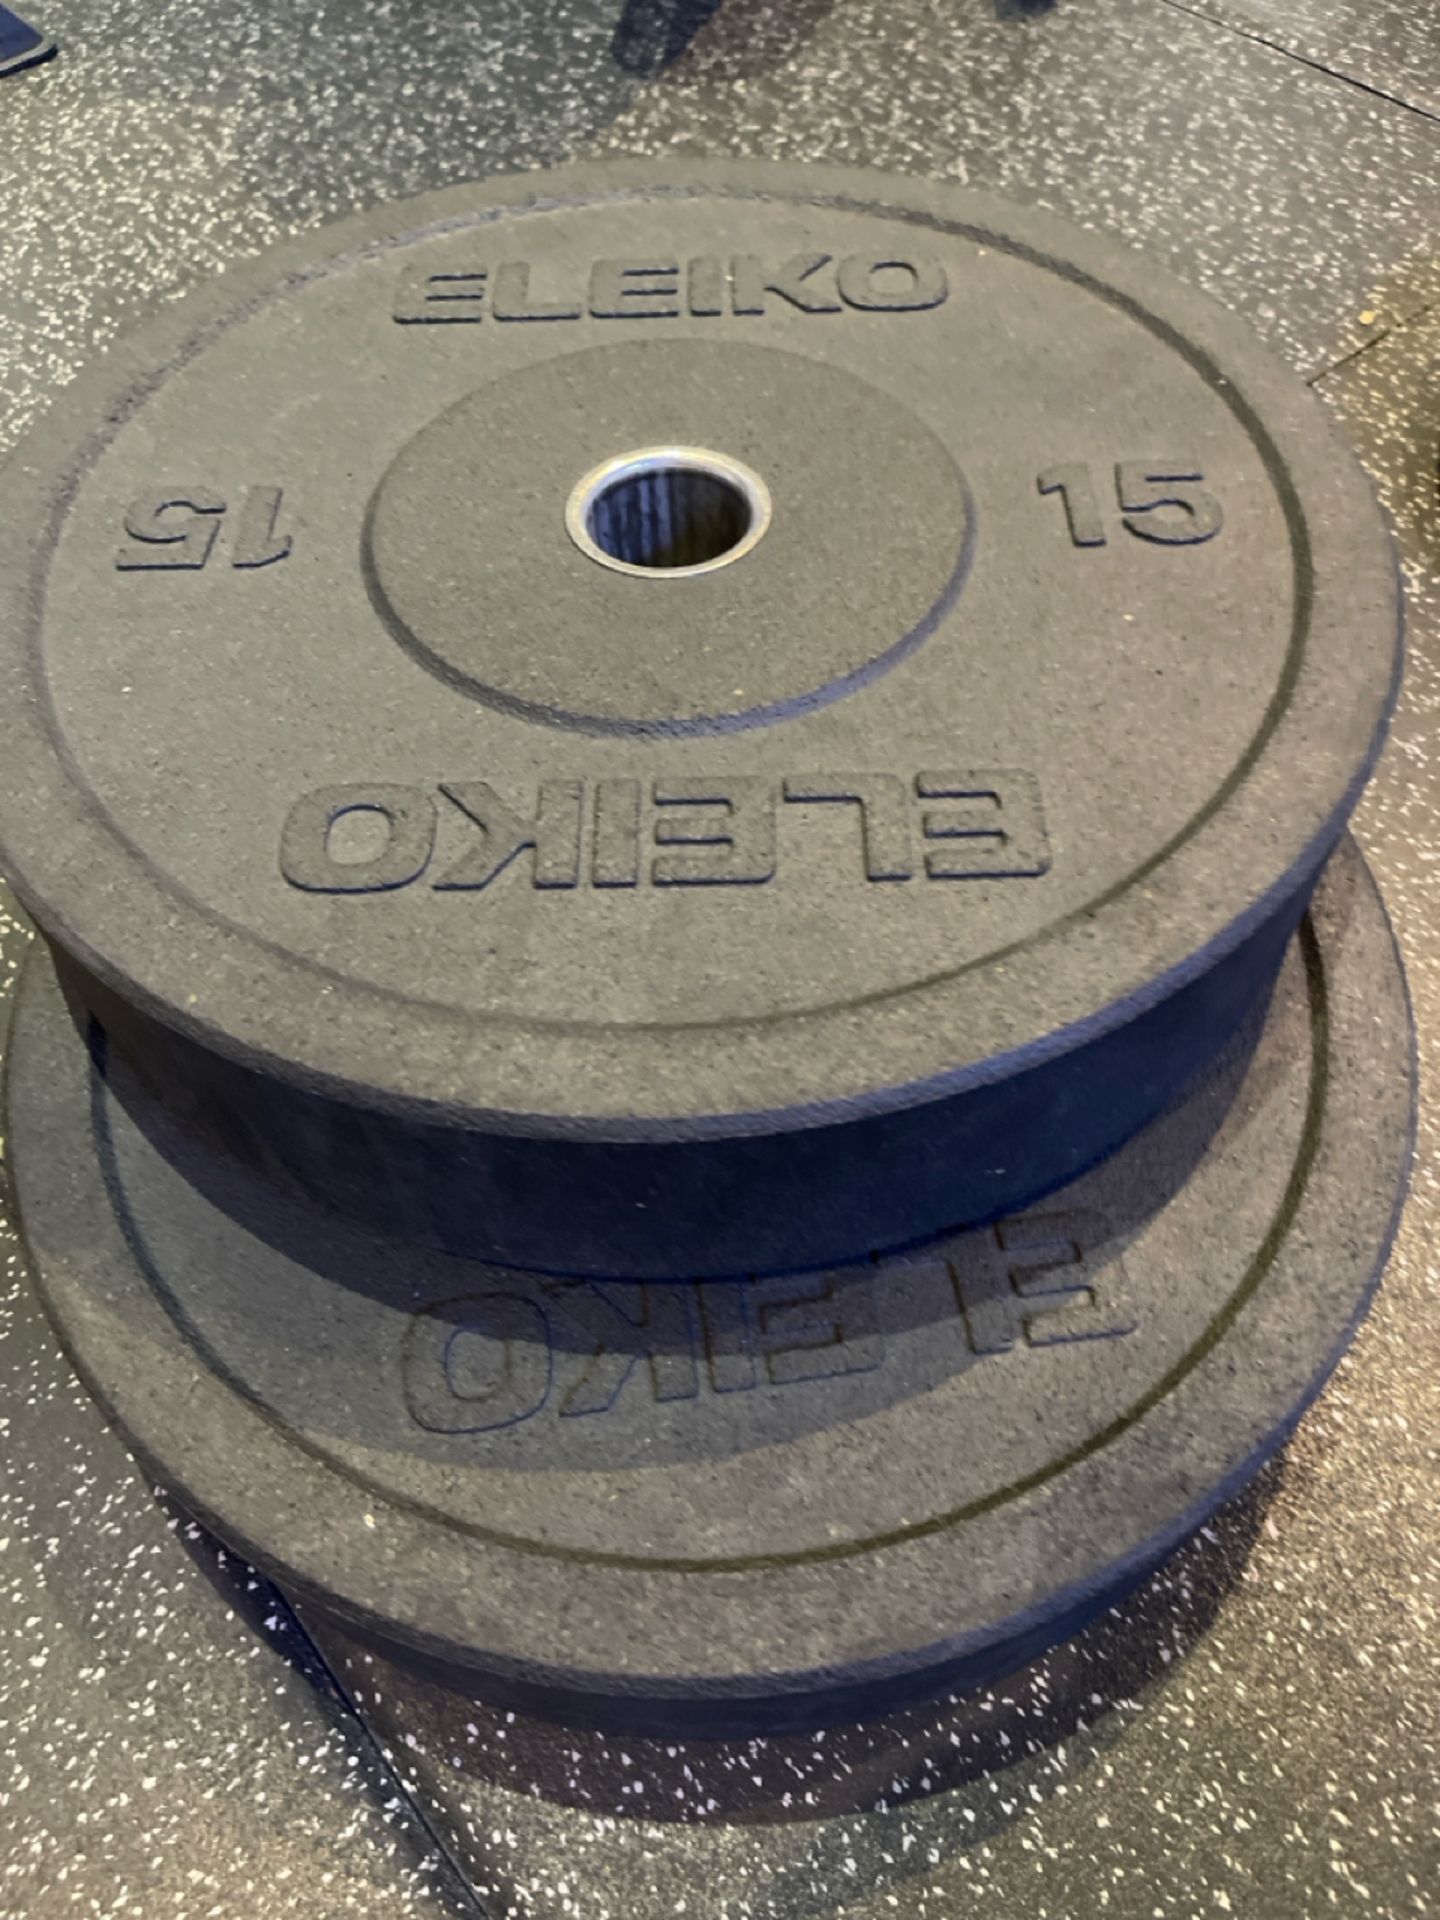 Eleiko Plates 15kg x2 - Image 2 of 2